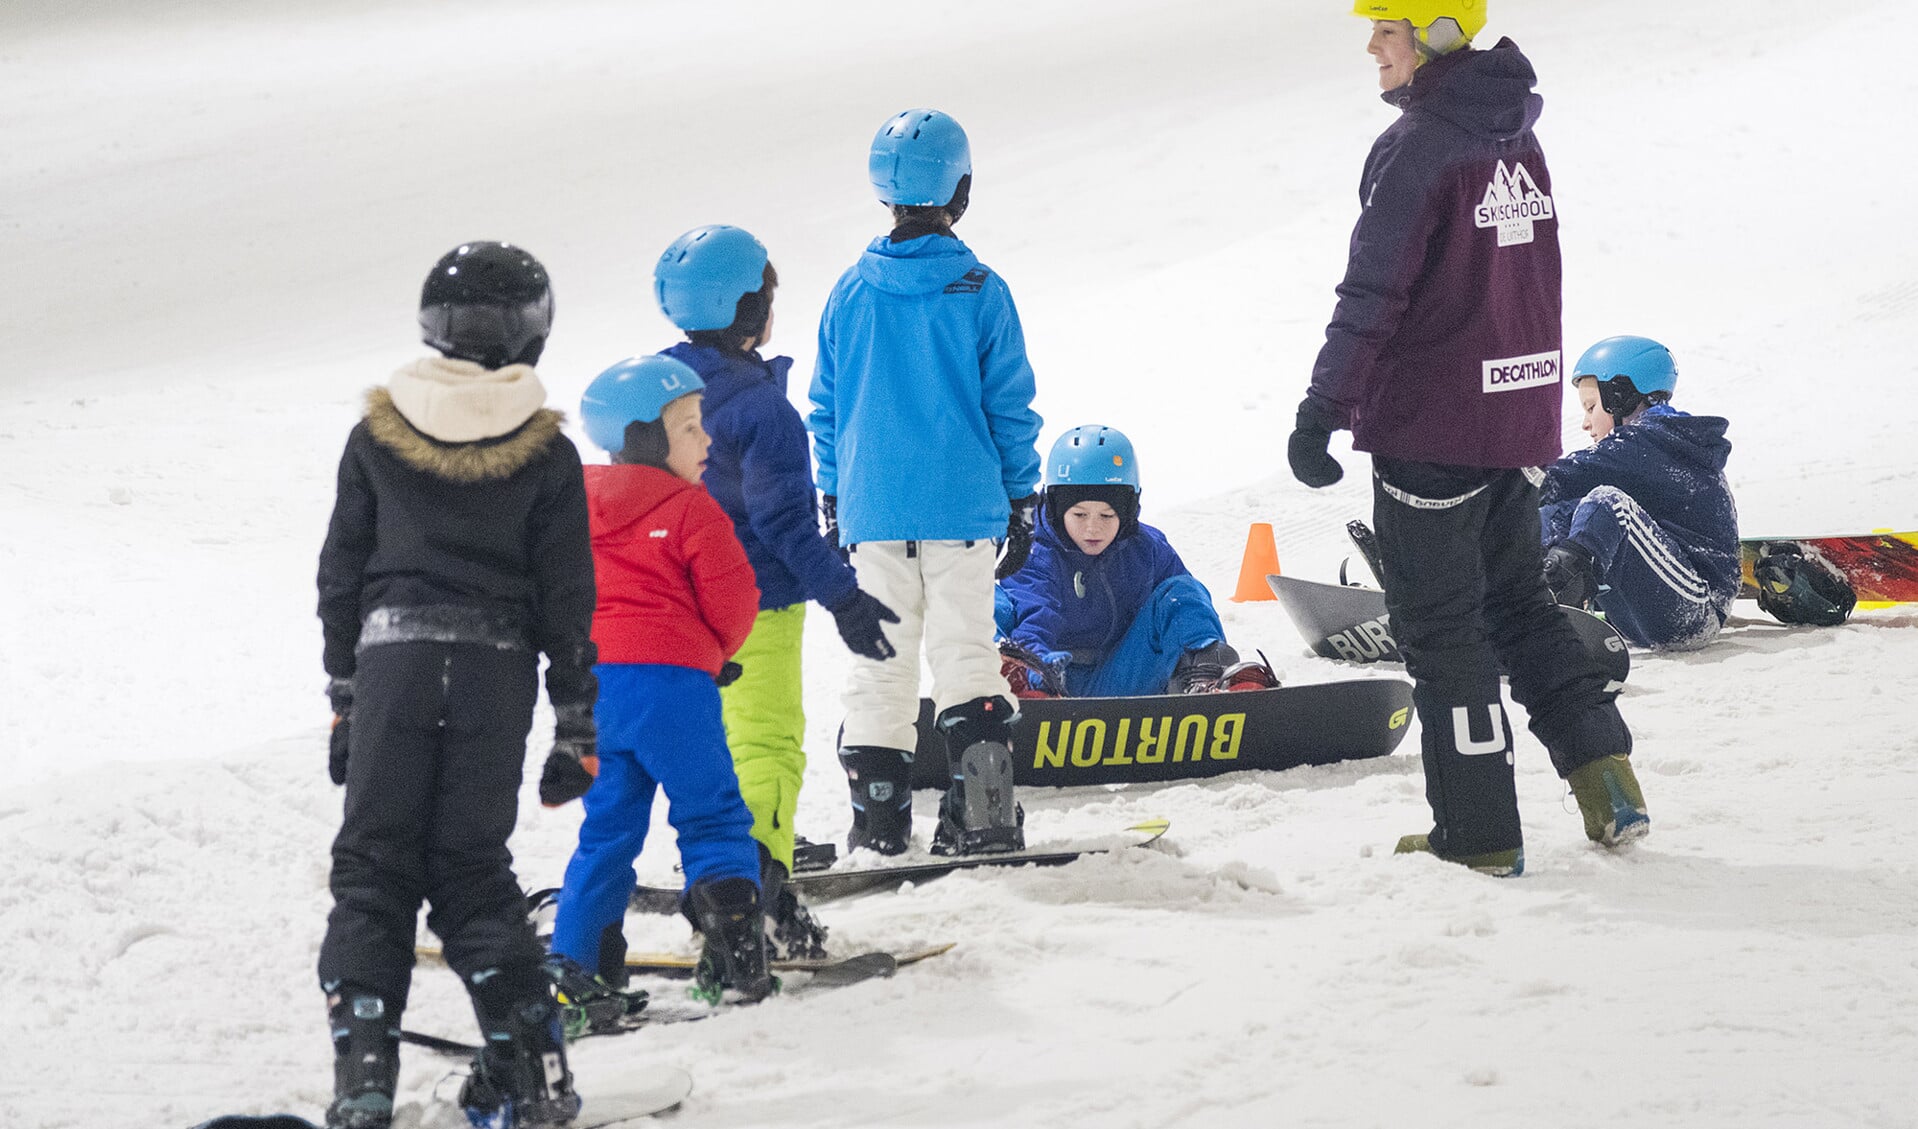 Basisschoolkinderen konden dinsdag naar hartenlust schaatsen en skiën in De Uithof. Het Haagse sportcentrum had vanwege de landelijke staking in het basisonderwijs een speciaal programma georganiseerd.